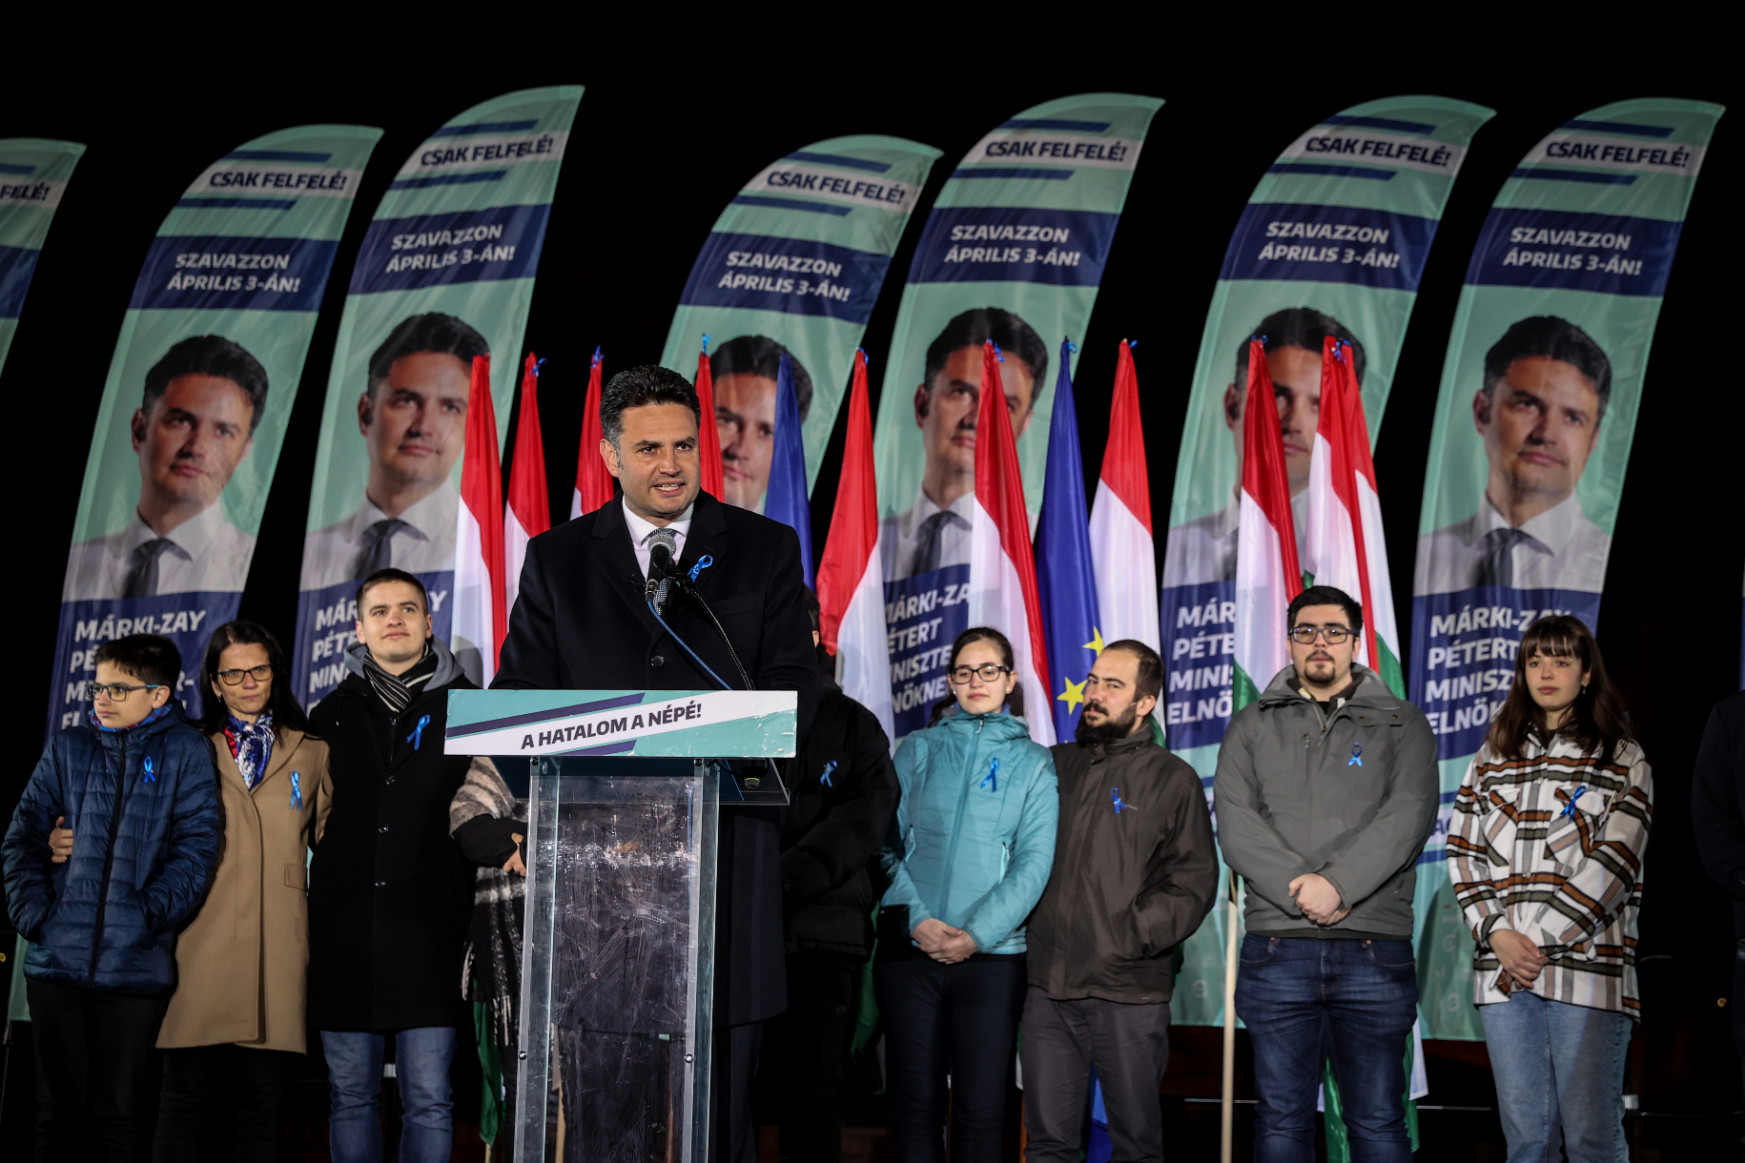 Márki-Zay Péter beszédet tartott, egyetlen ellenzéki párt képviselője sem állt ki mellé a színpadra